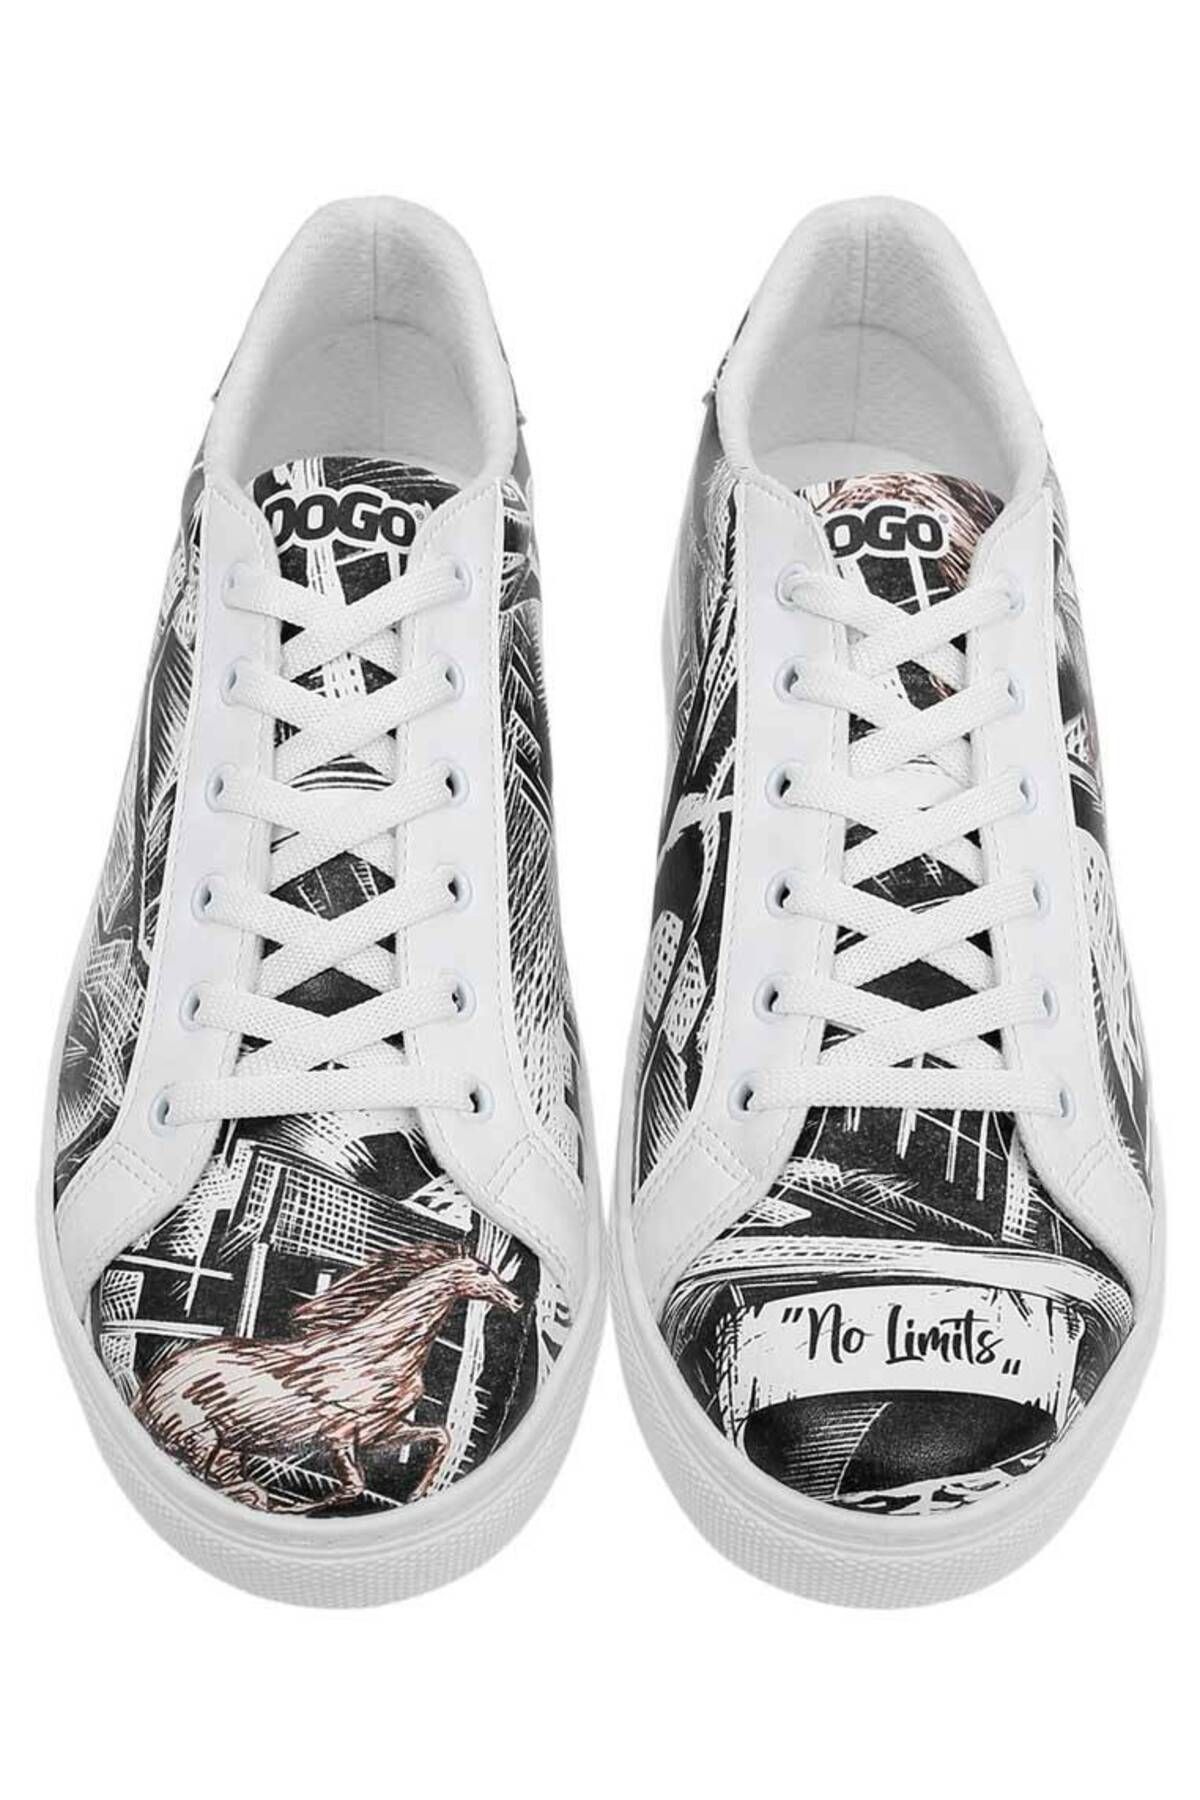 Dogo Erkek Vegan Deri Beyaz Günlük Sneakers - No Limits Tasarım